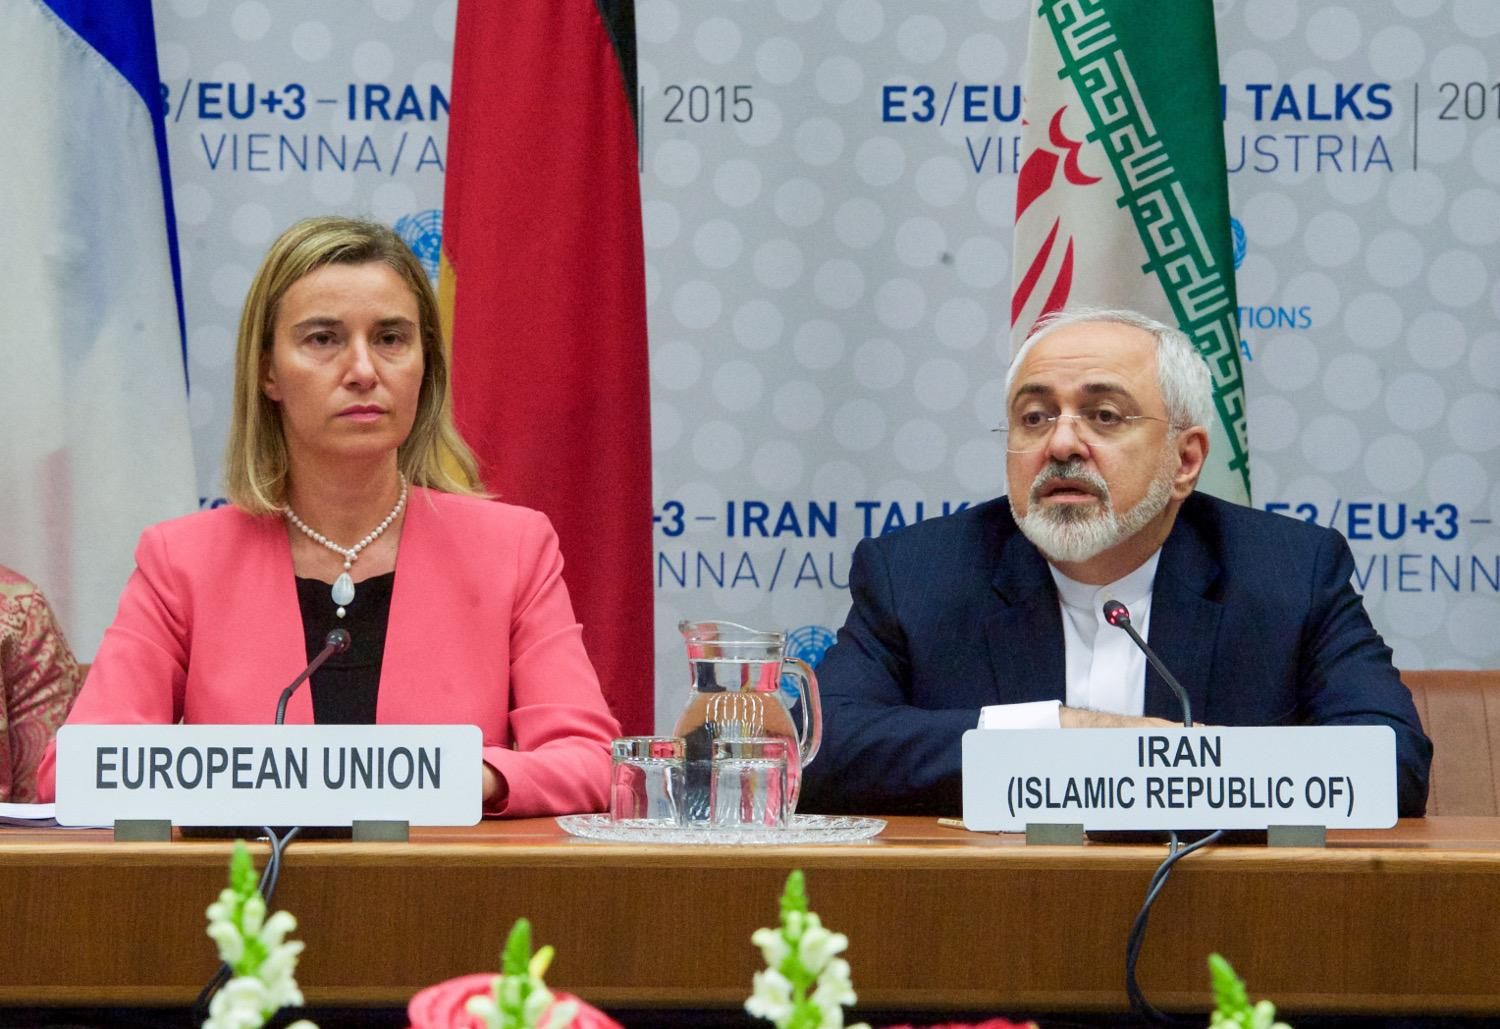 ЄС акумулює зусилля, аби врятувати ядерну угоду з Іраном, – французьке видання